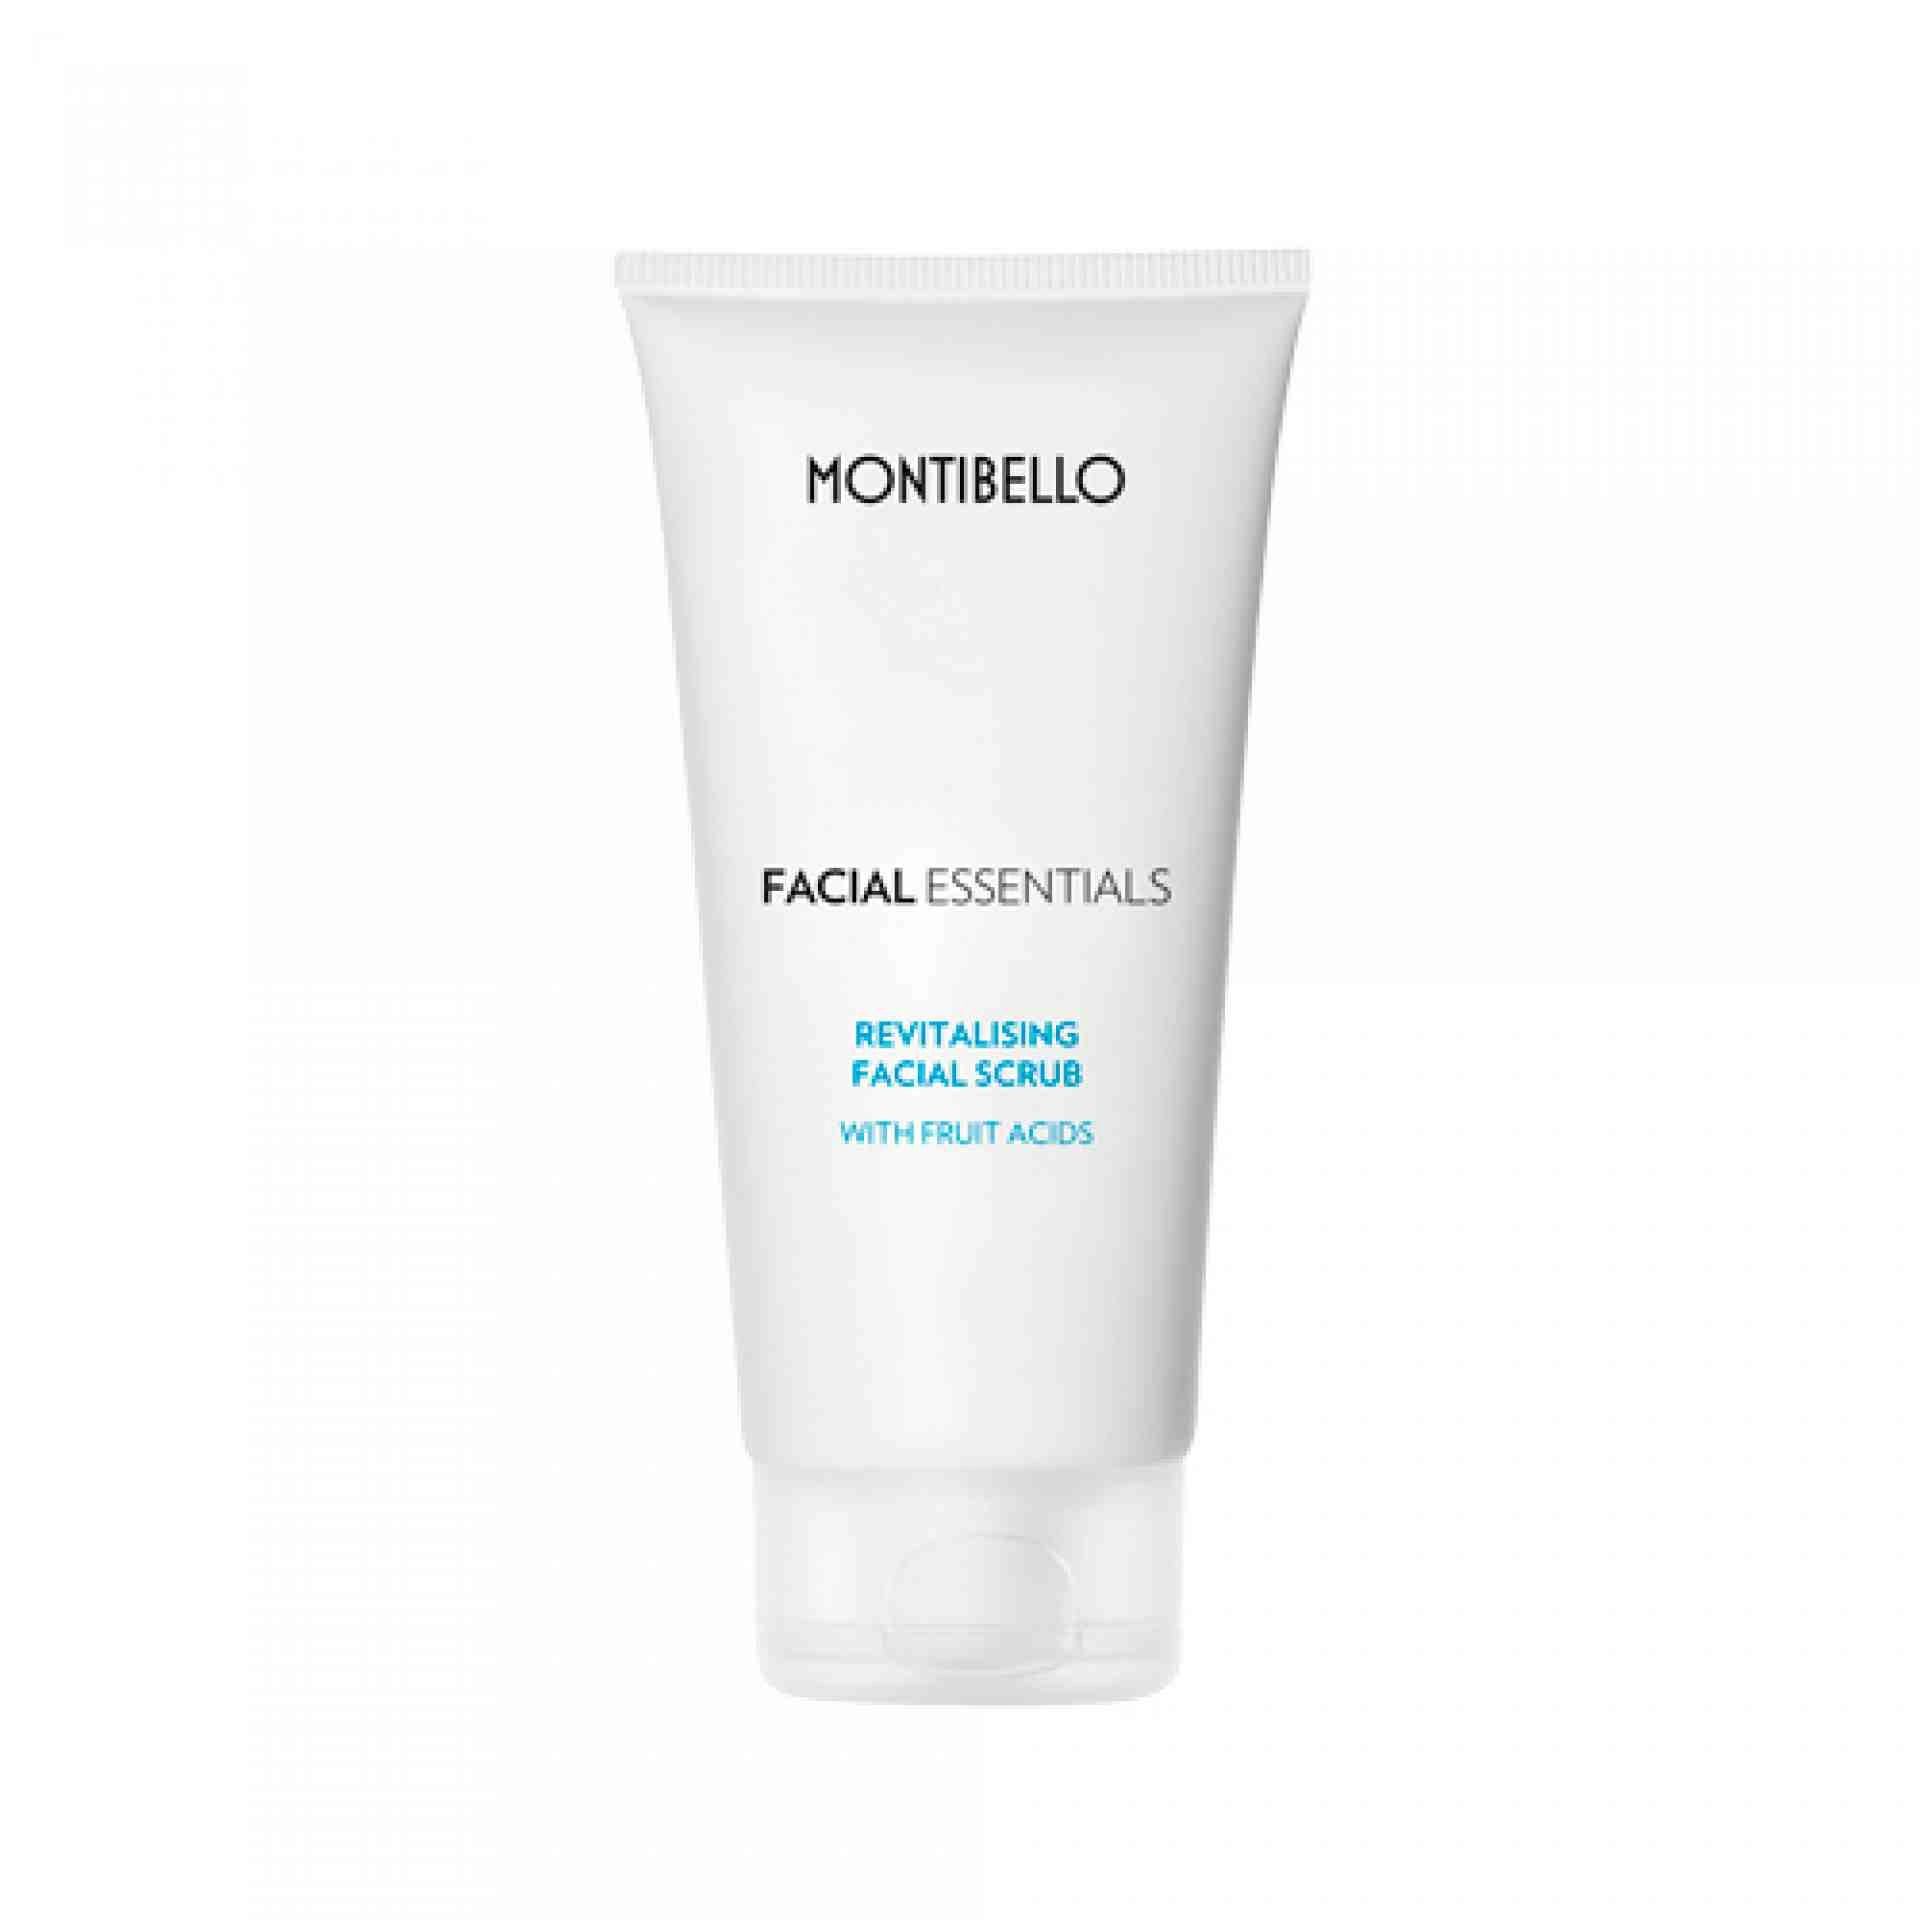 Revitalising Facial Scrub | Exfoliante Facial 150 ml - Facial Essentiales - Montibello ®